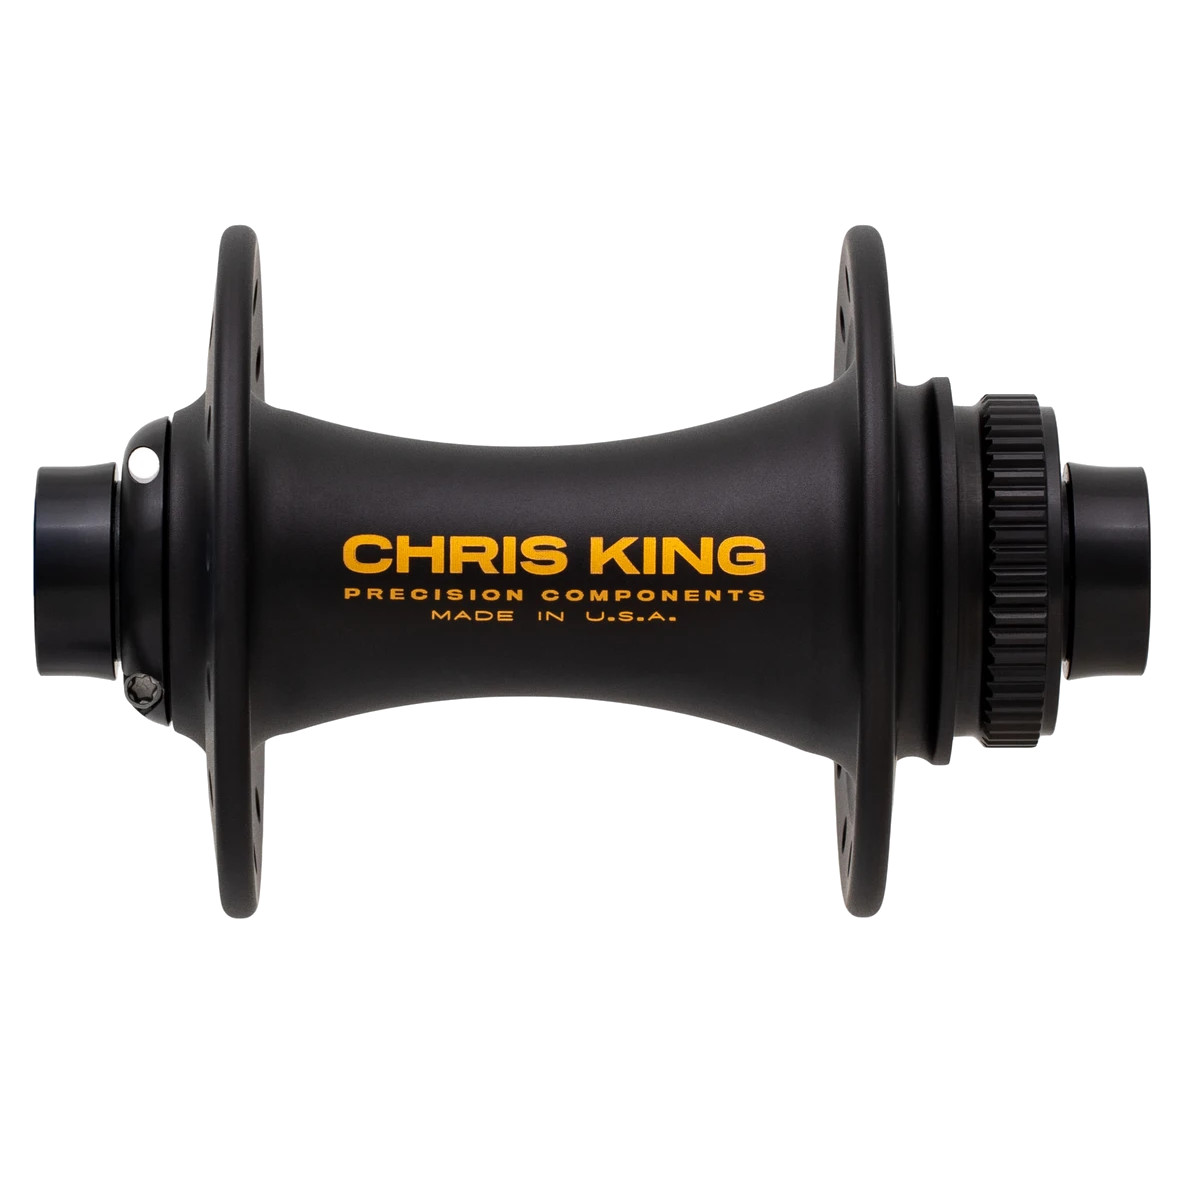 Produktbild von Chris King Vorderradnabe - Centerlock - Boost - 15x110mm - Two Tone Black / Gold